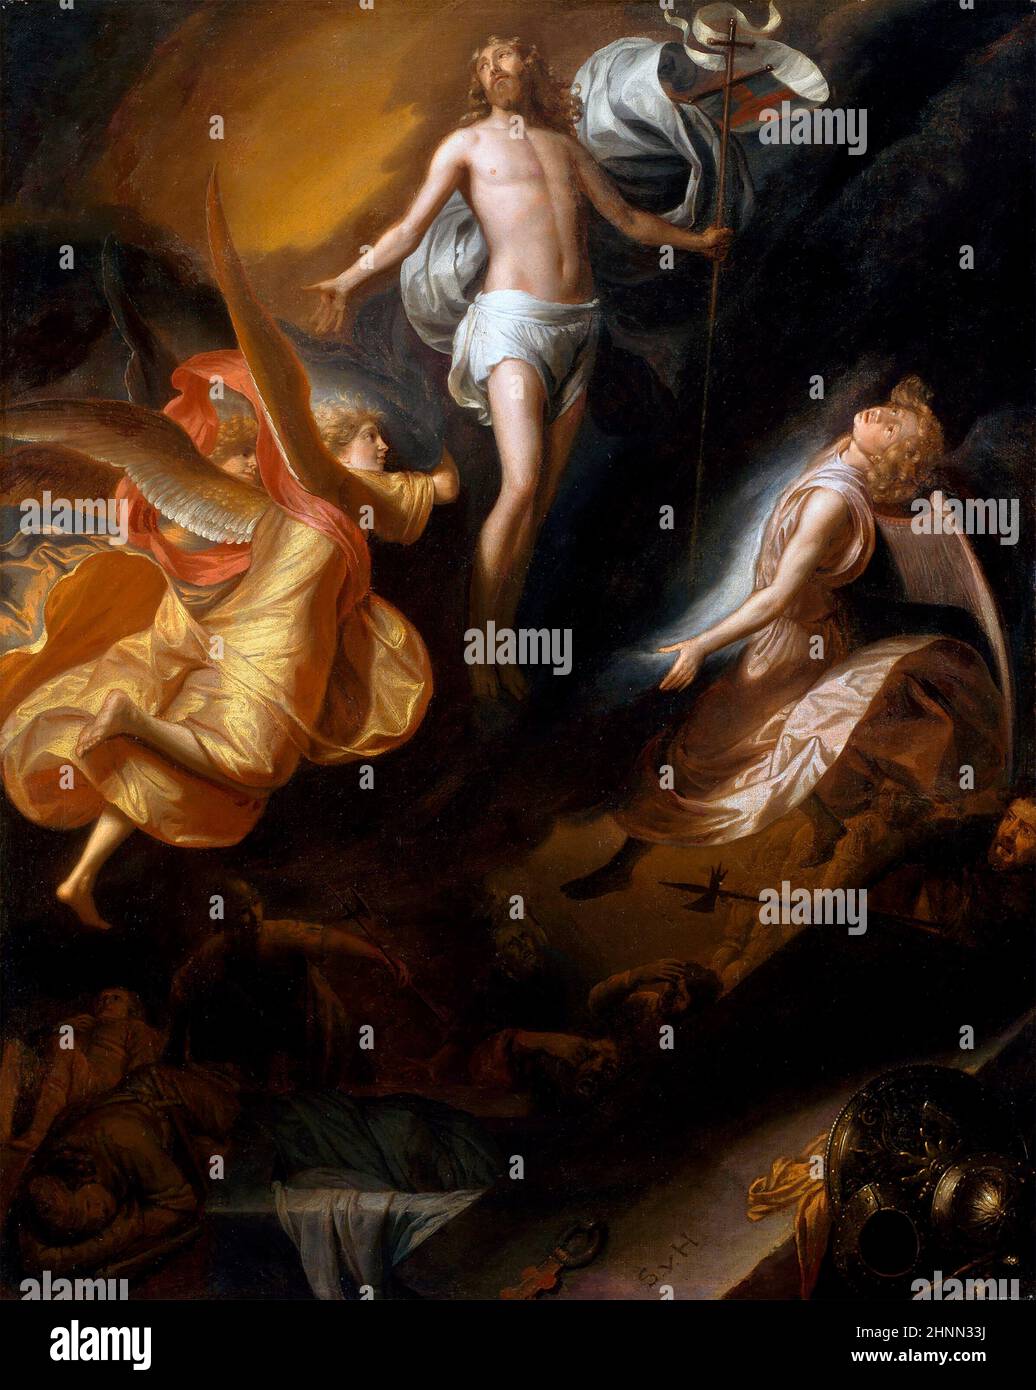 Samuel van Hoogstraten. Die Auferstehung Christi vom niederländischen Künstler des Goldenen Zeitalters, Samuel Dirksz van Hoogstraten (1627-1678), Öl auf Leinwand, 1665/70 Stockfoto